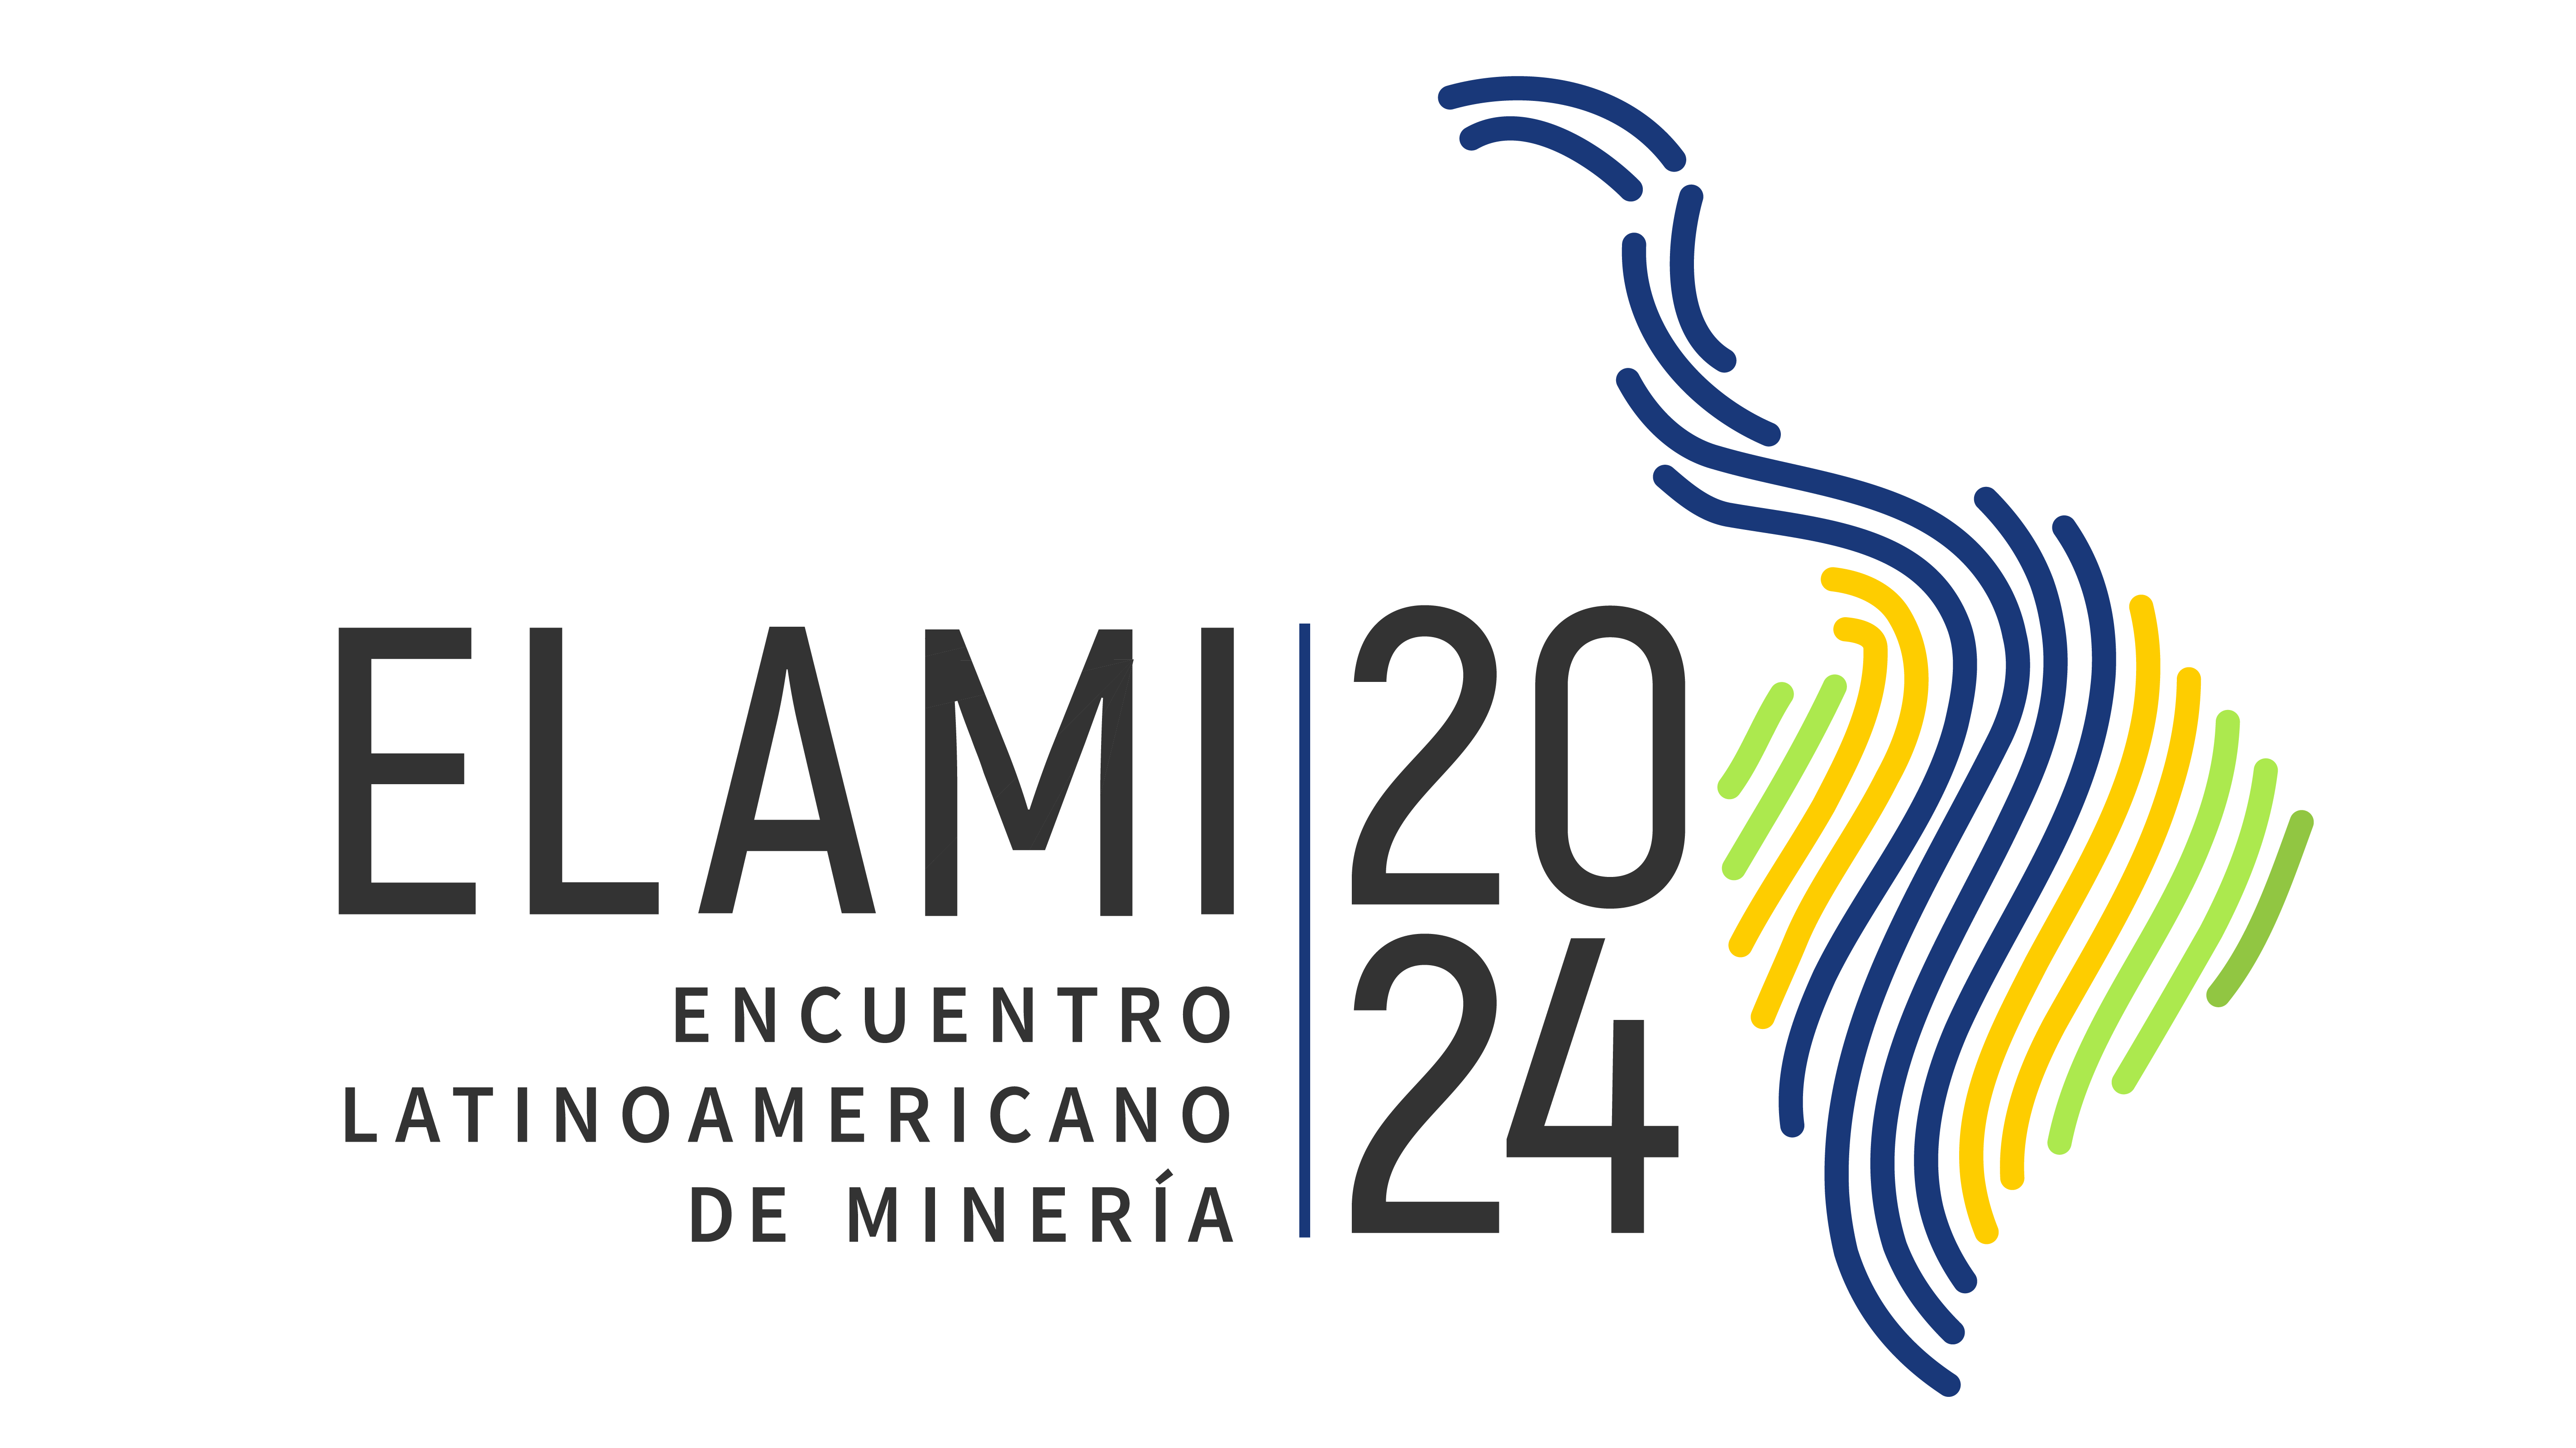 Encuentro Latinoamericano de Mineria